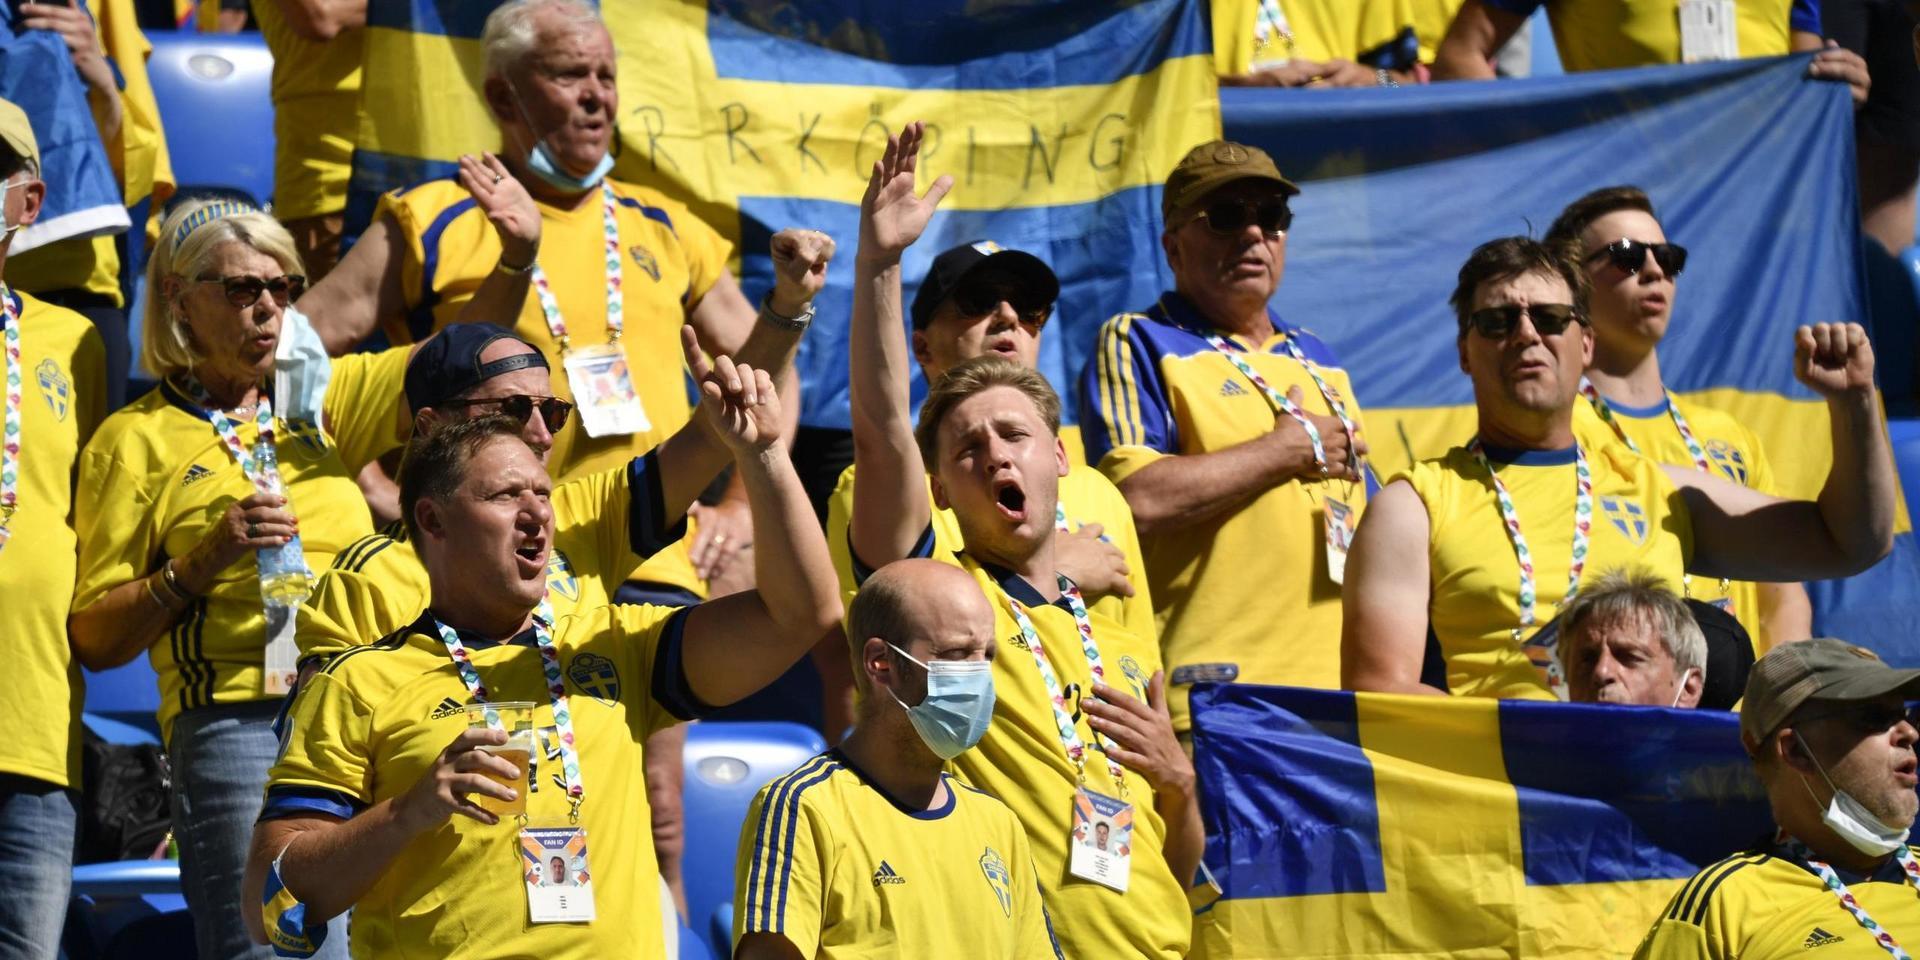 Svenska fans på läktaren inför matchen mellan Sverige och Slovakien under fotbolls-EM i S:t Petersburg.